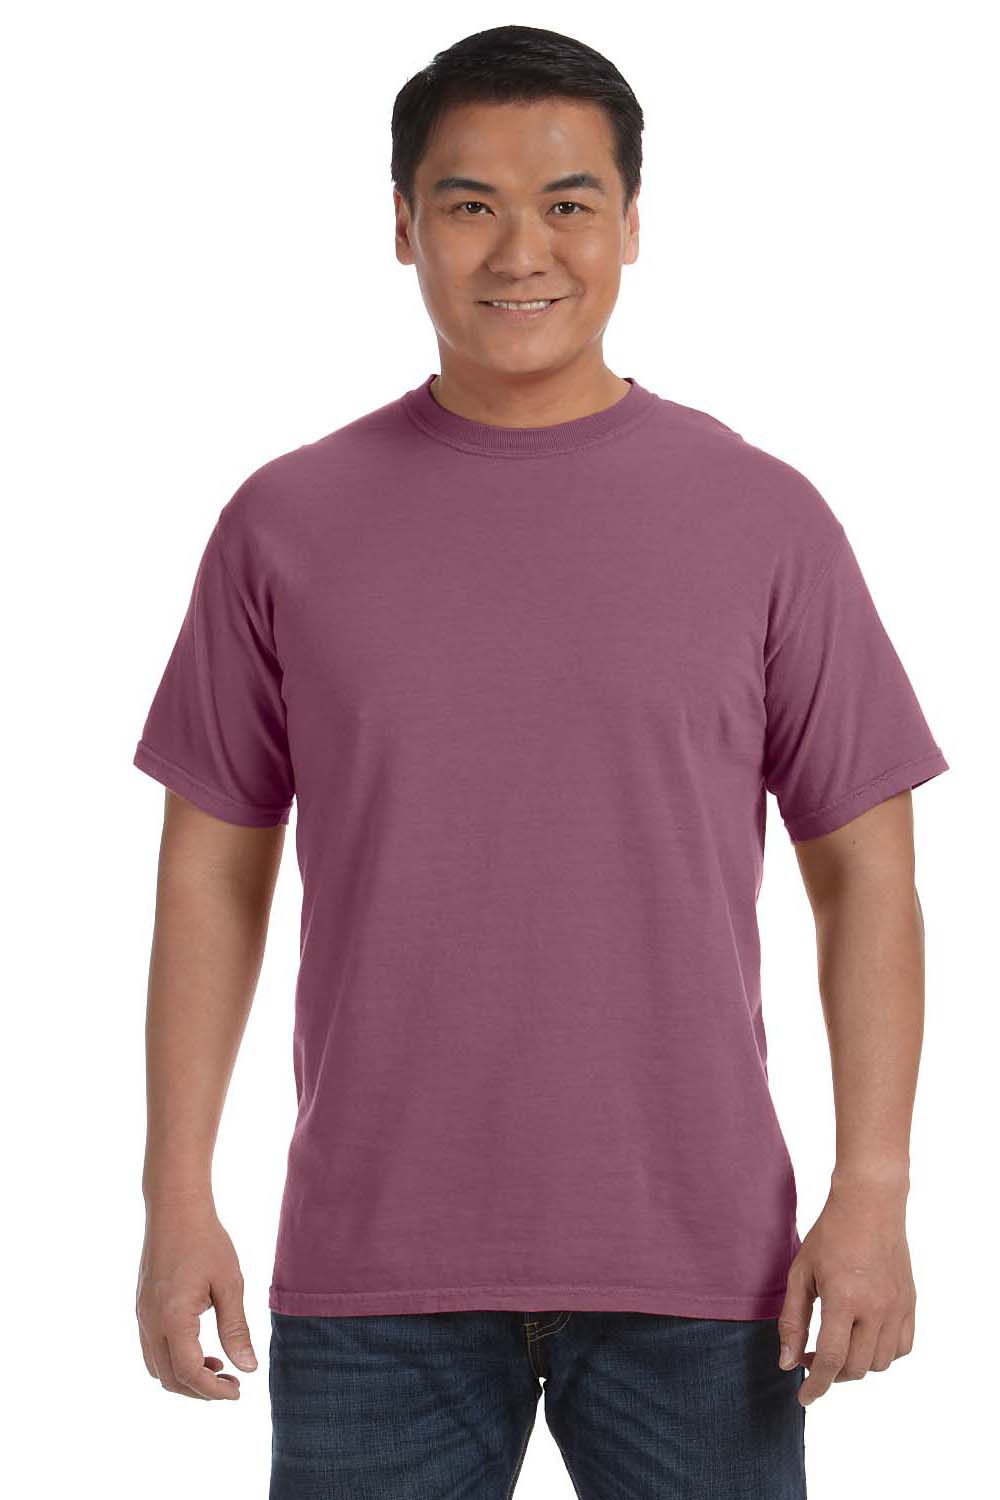 Comfort Colors C1717 Mens Short Sleeve Crewneck T-Shirt Berry Purple Front